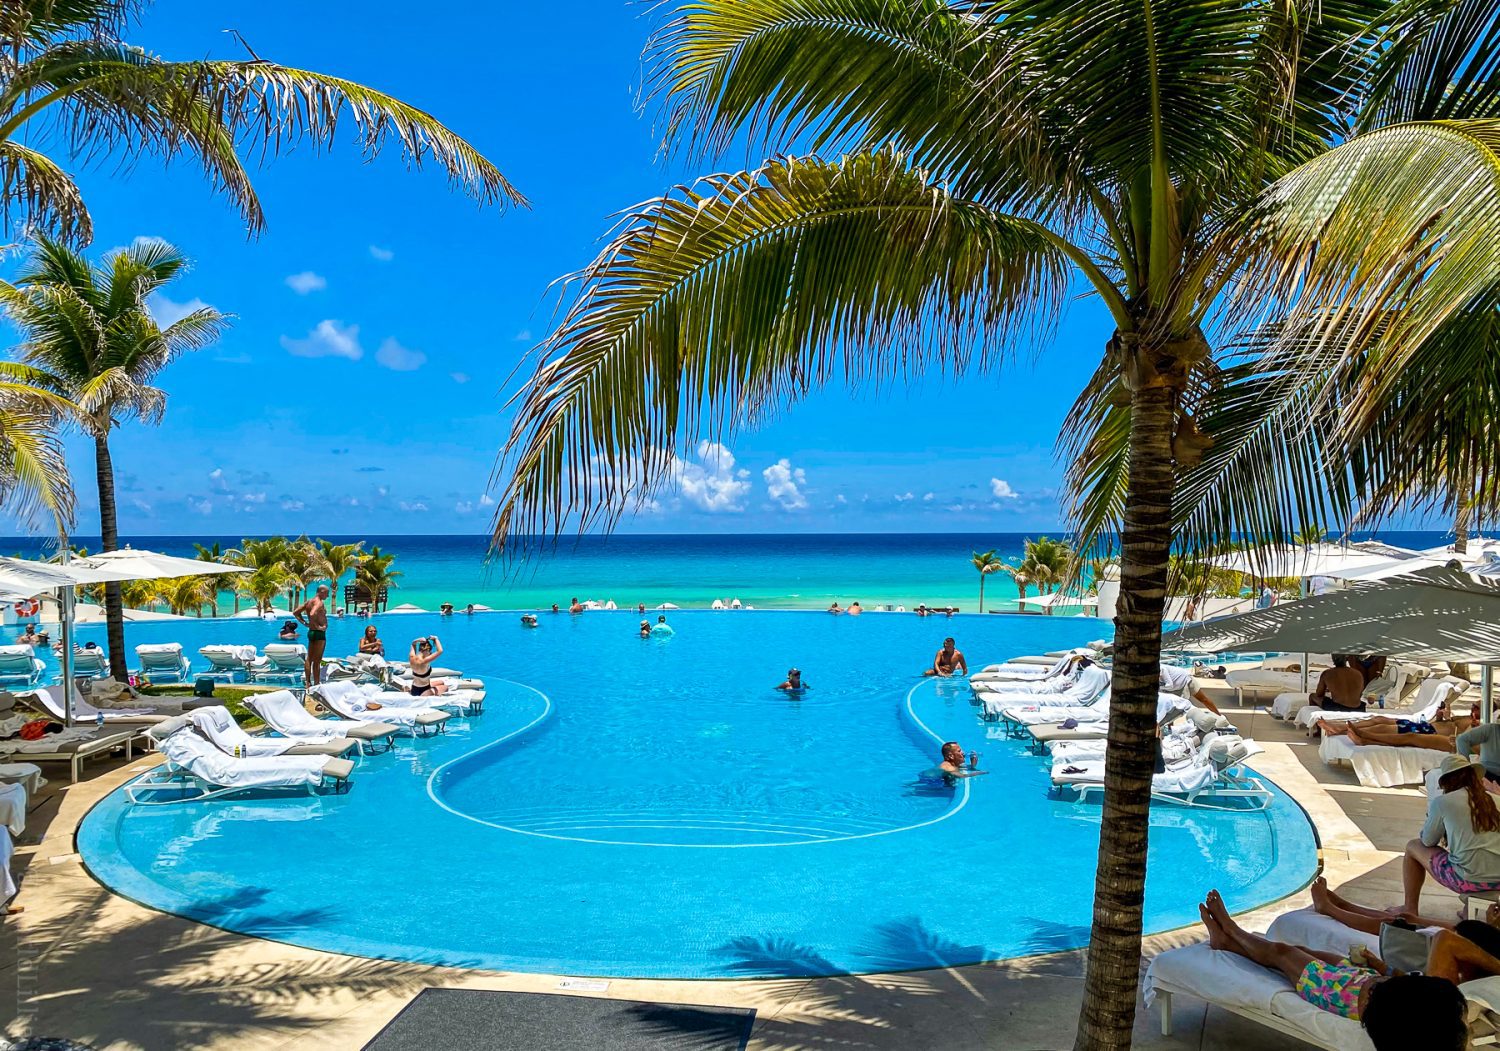 Le Blanc all-inclusive resort in Cancun, Mexico.